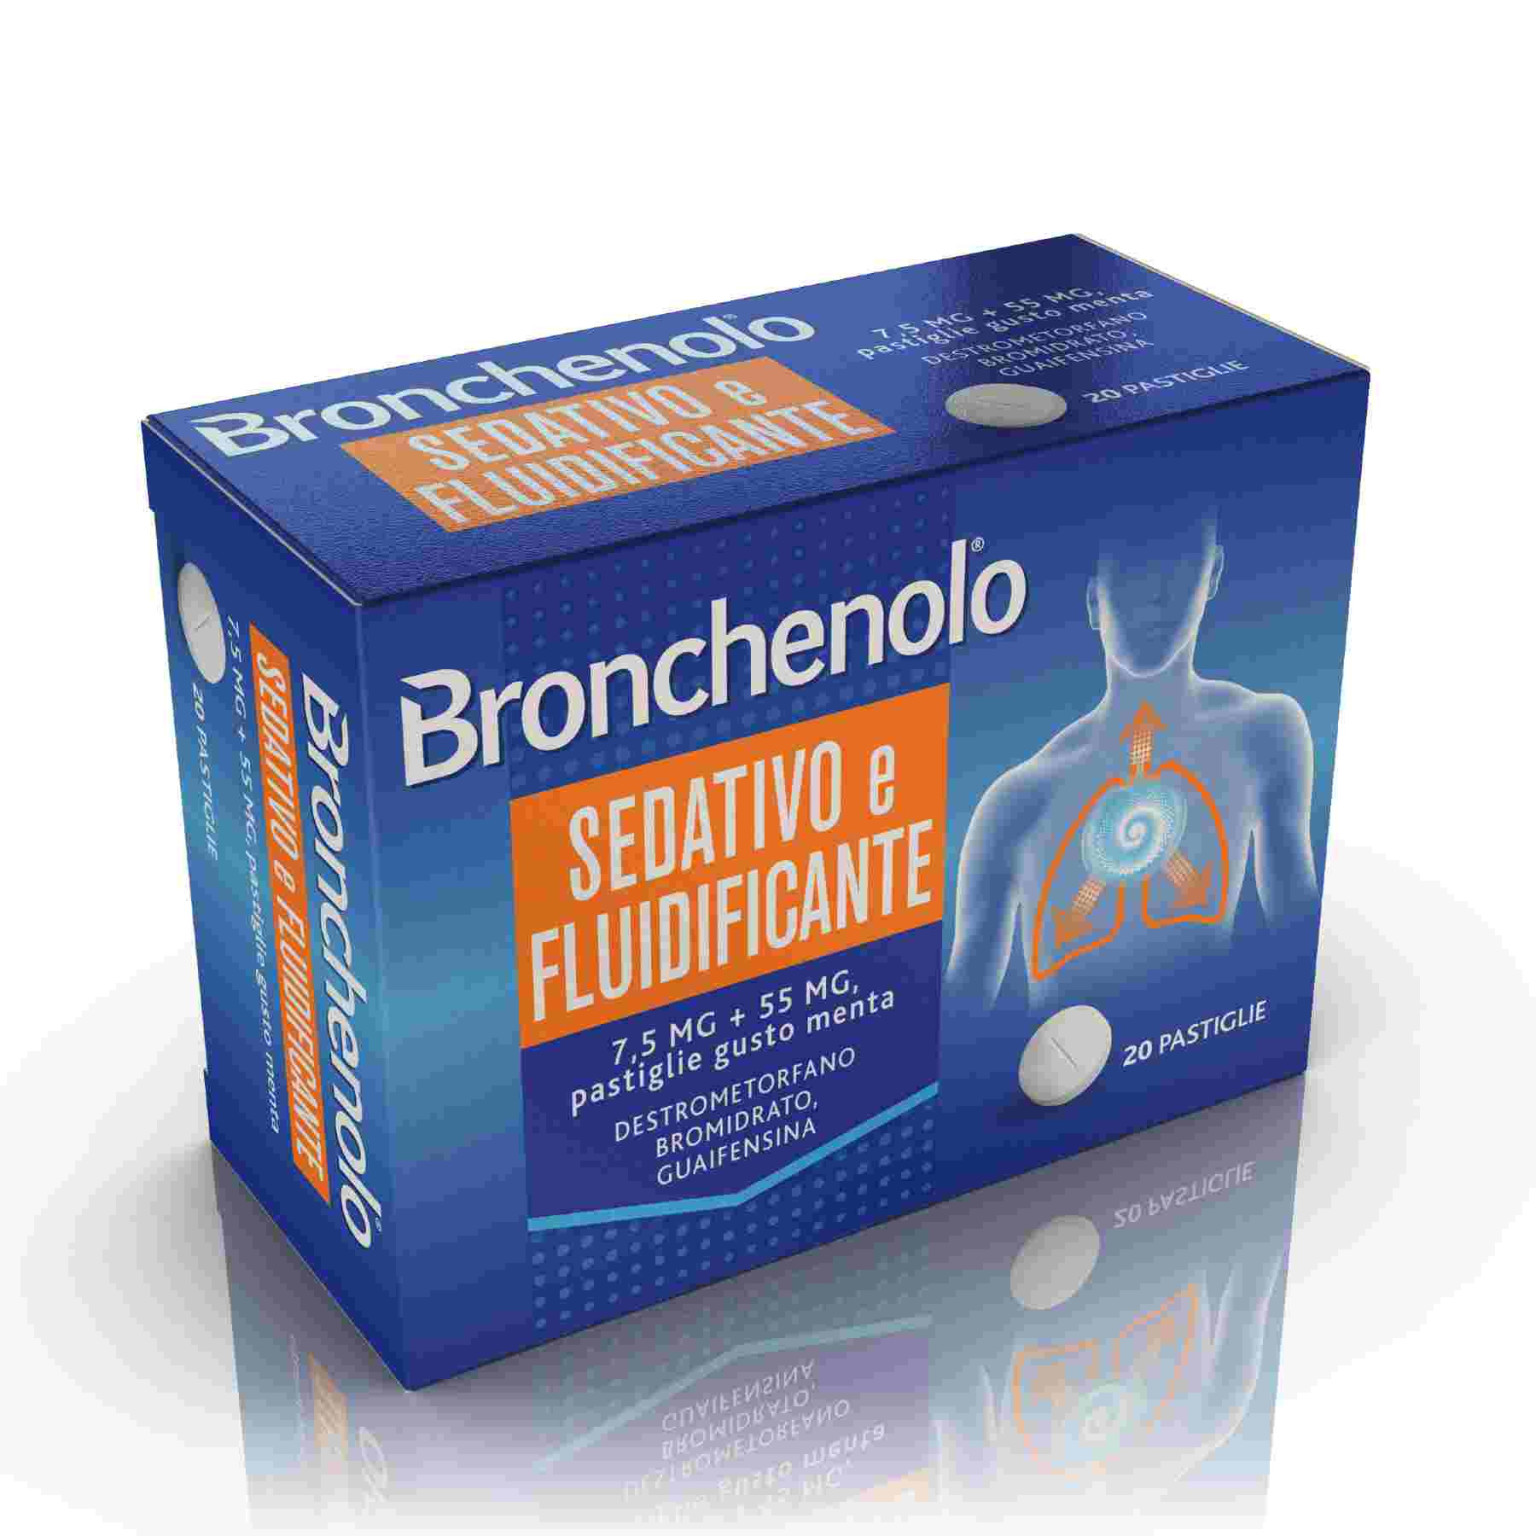 026564094 - Bronchenolo Sedativo e Fluidificante 20 Pastiglie - 0635128_3.jpg